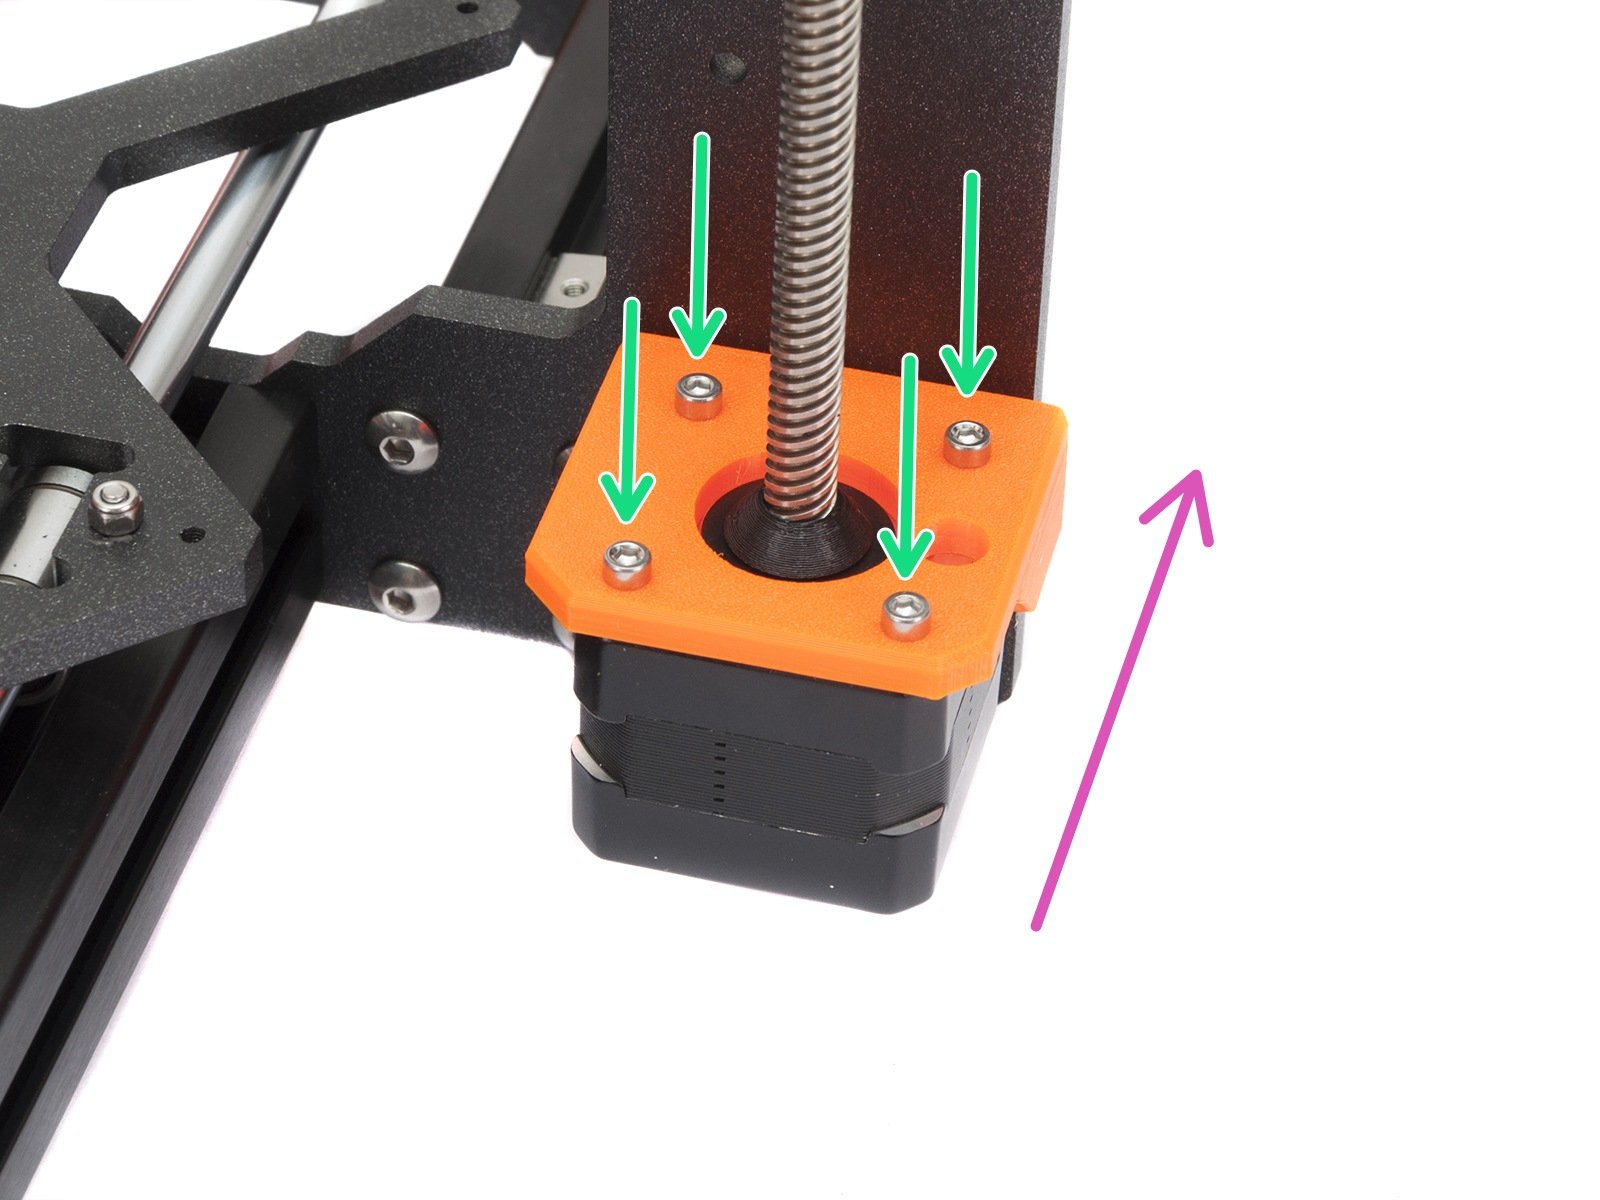 ReliaBot 200mm T8 Leitspindel und Mutter Durchmesser 8mm für Prusa i3 3D Drucker Z-Achse